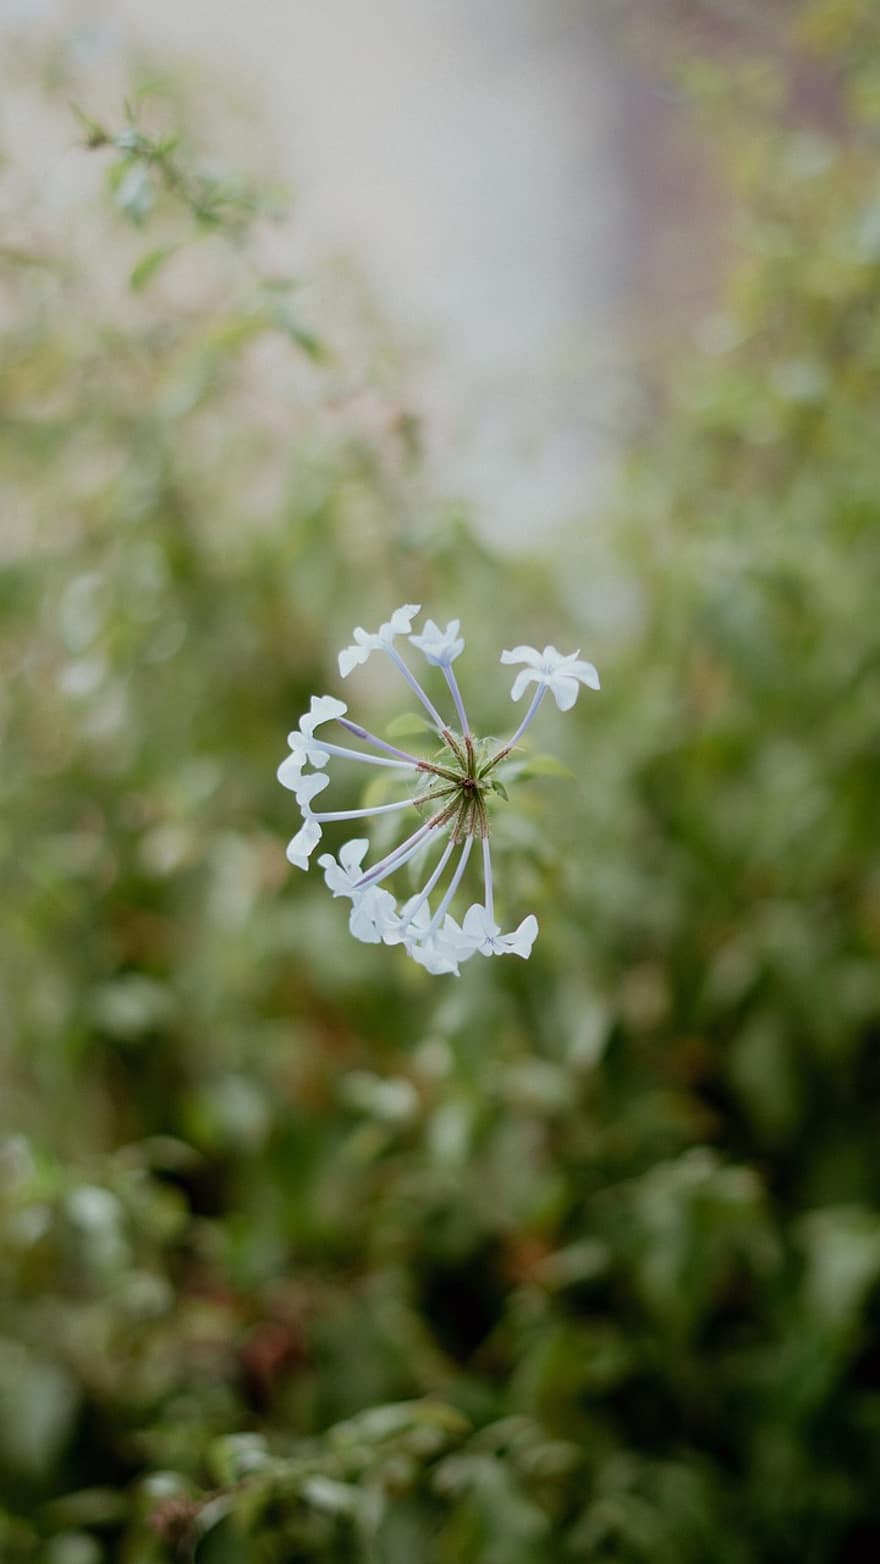 Cape Leadwort, Flowers, Plant, White Flowers, Petals, Bloom, Nature